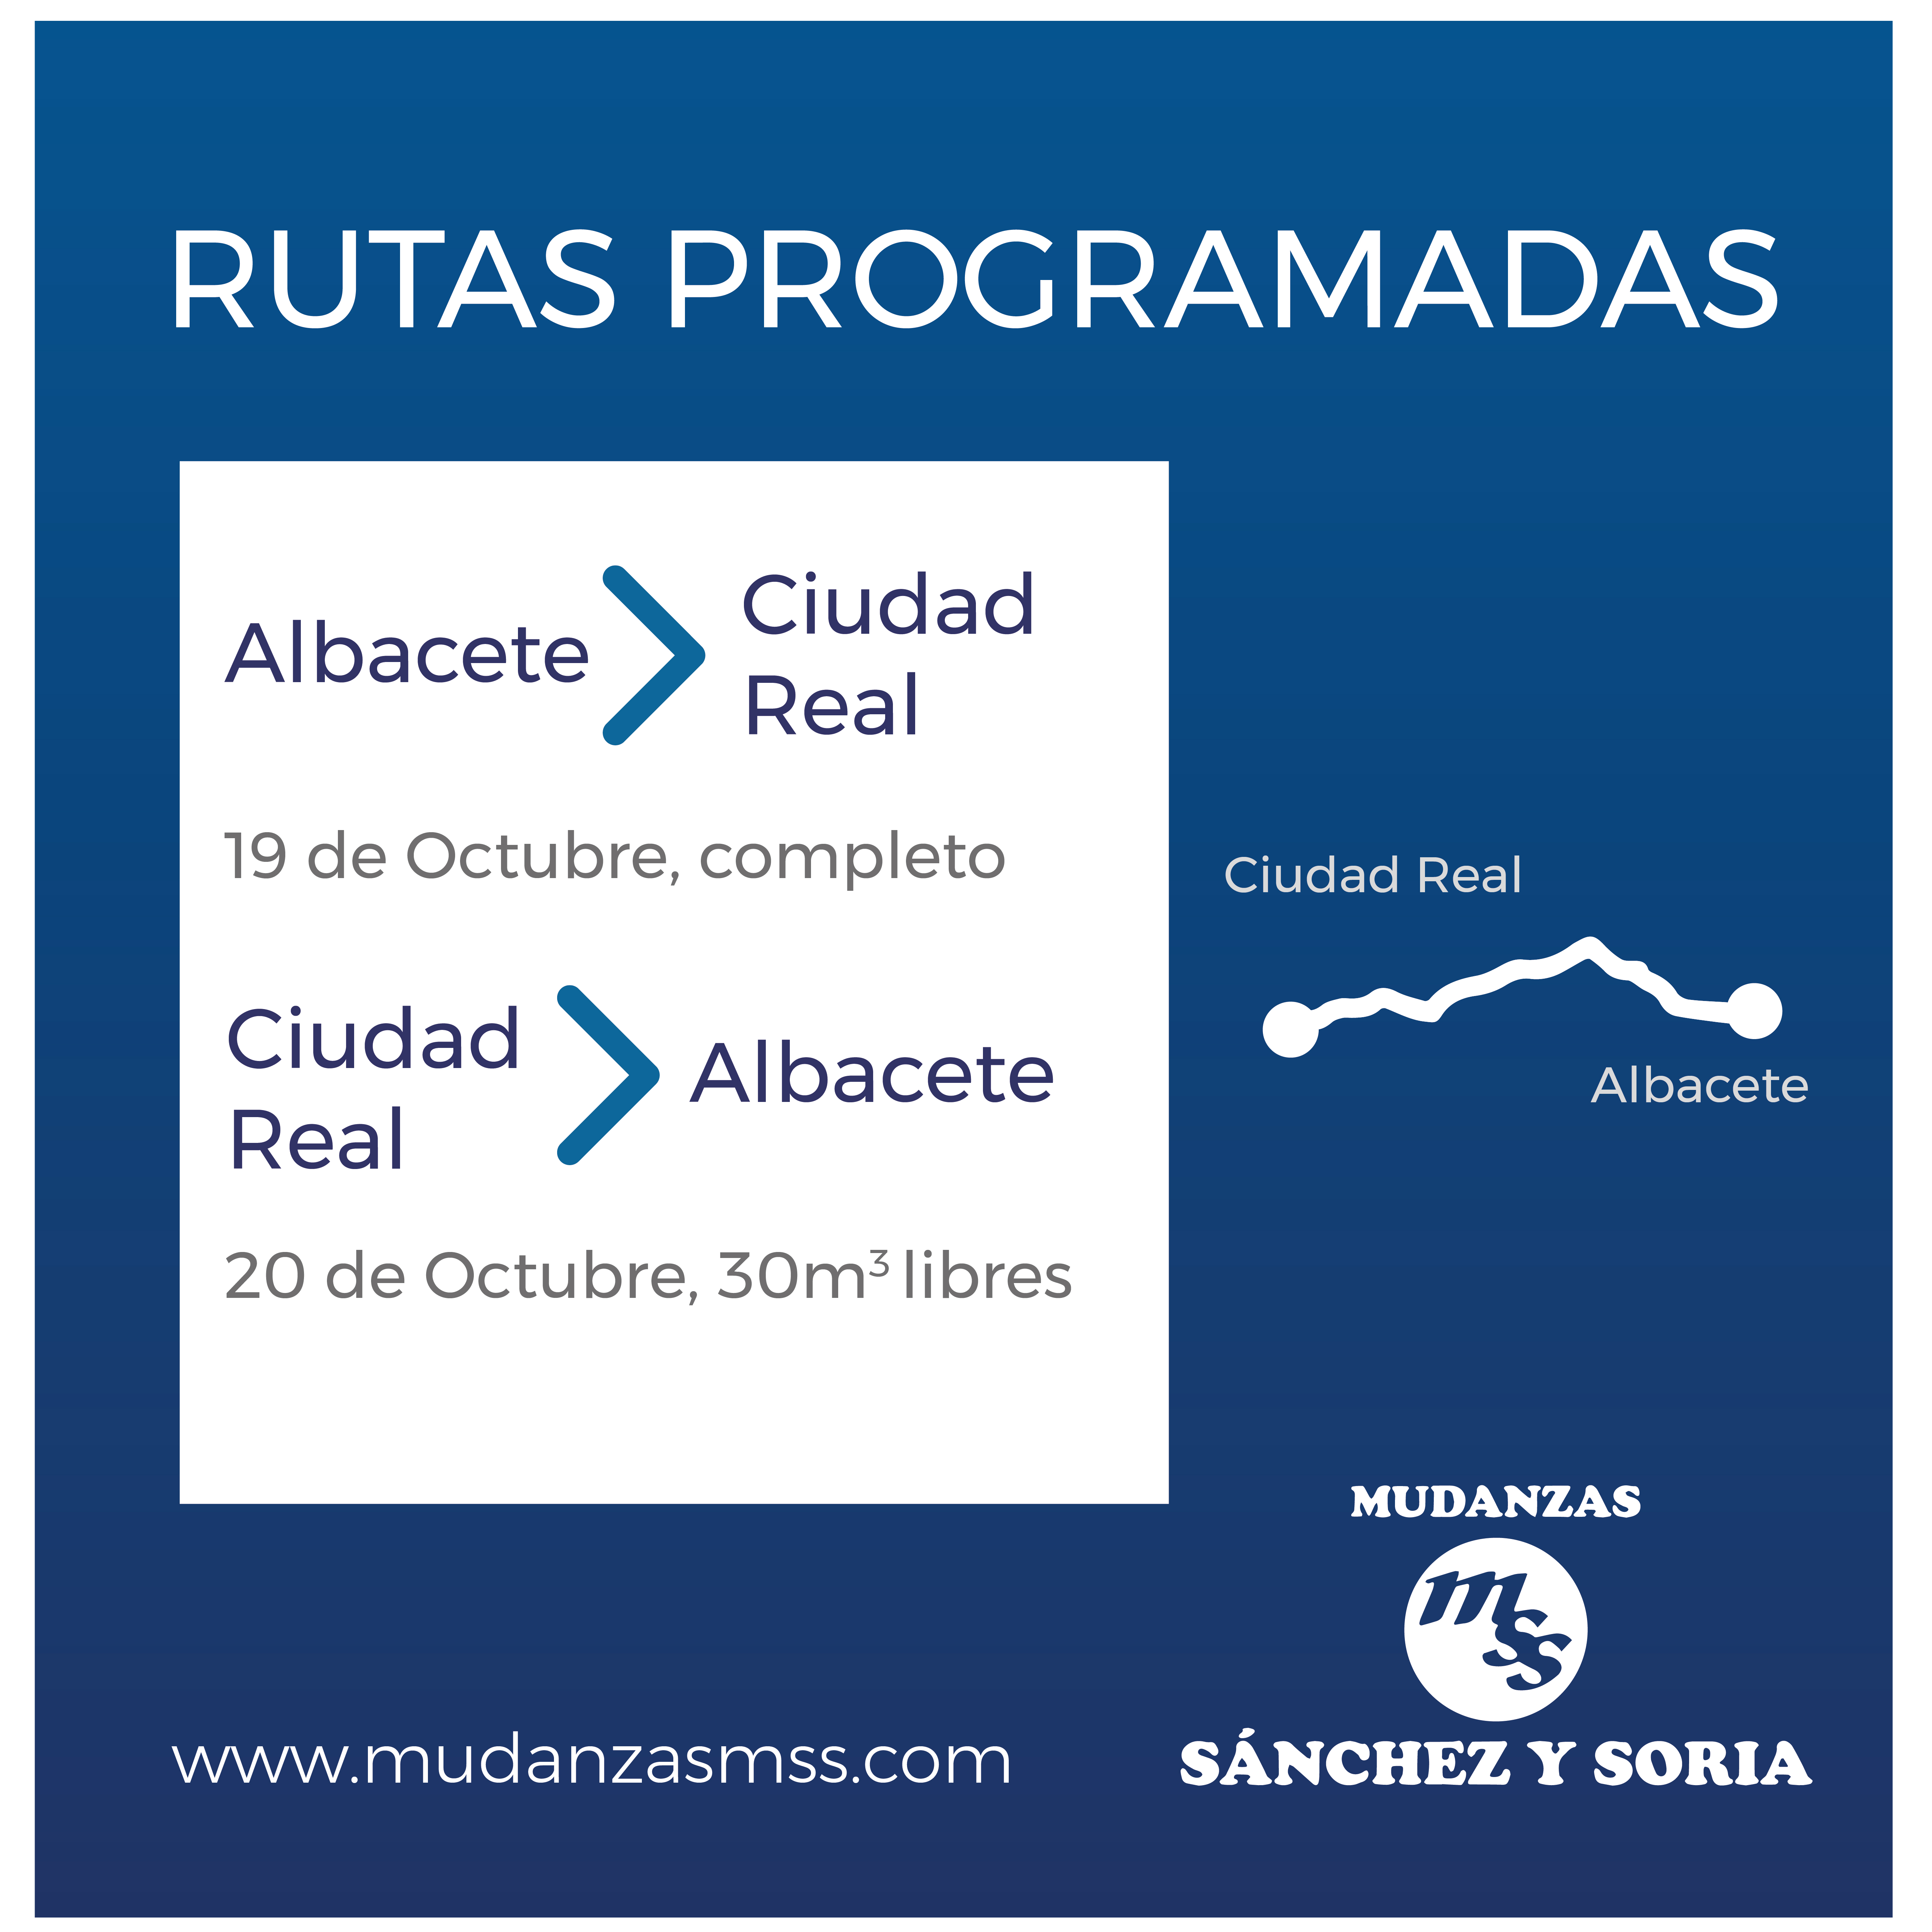 Rutas de transporte programadas: Albacete  Ciudad Real